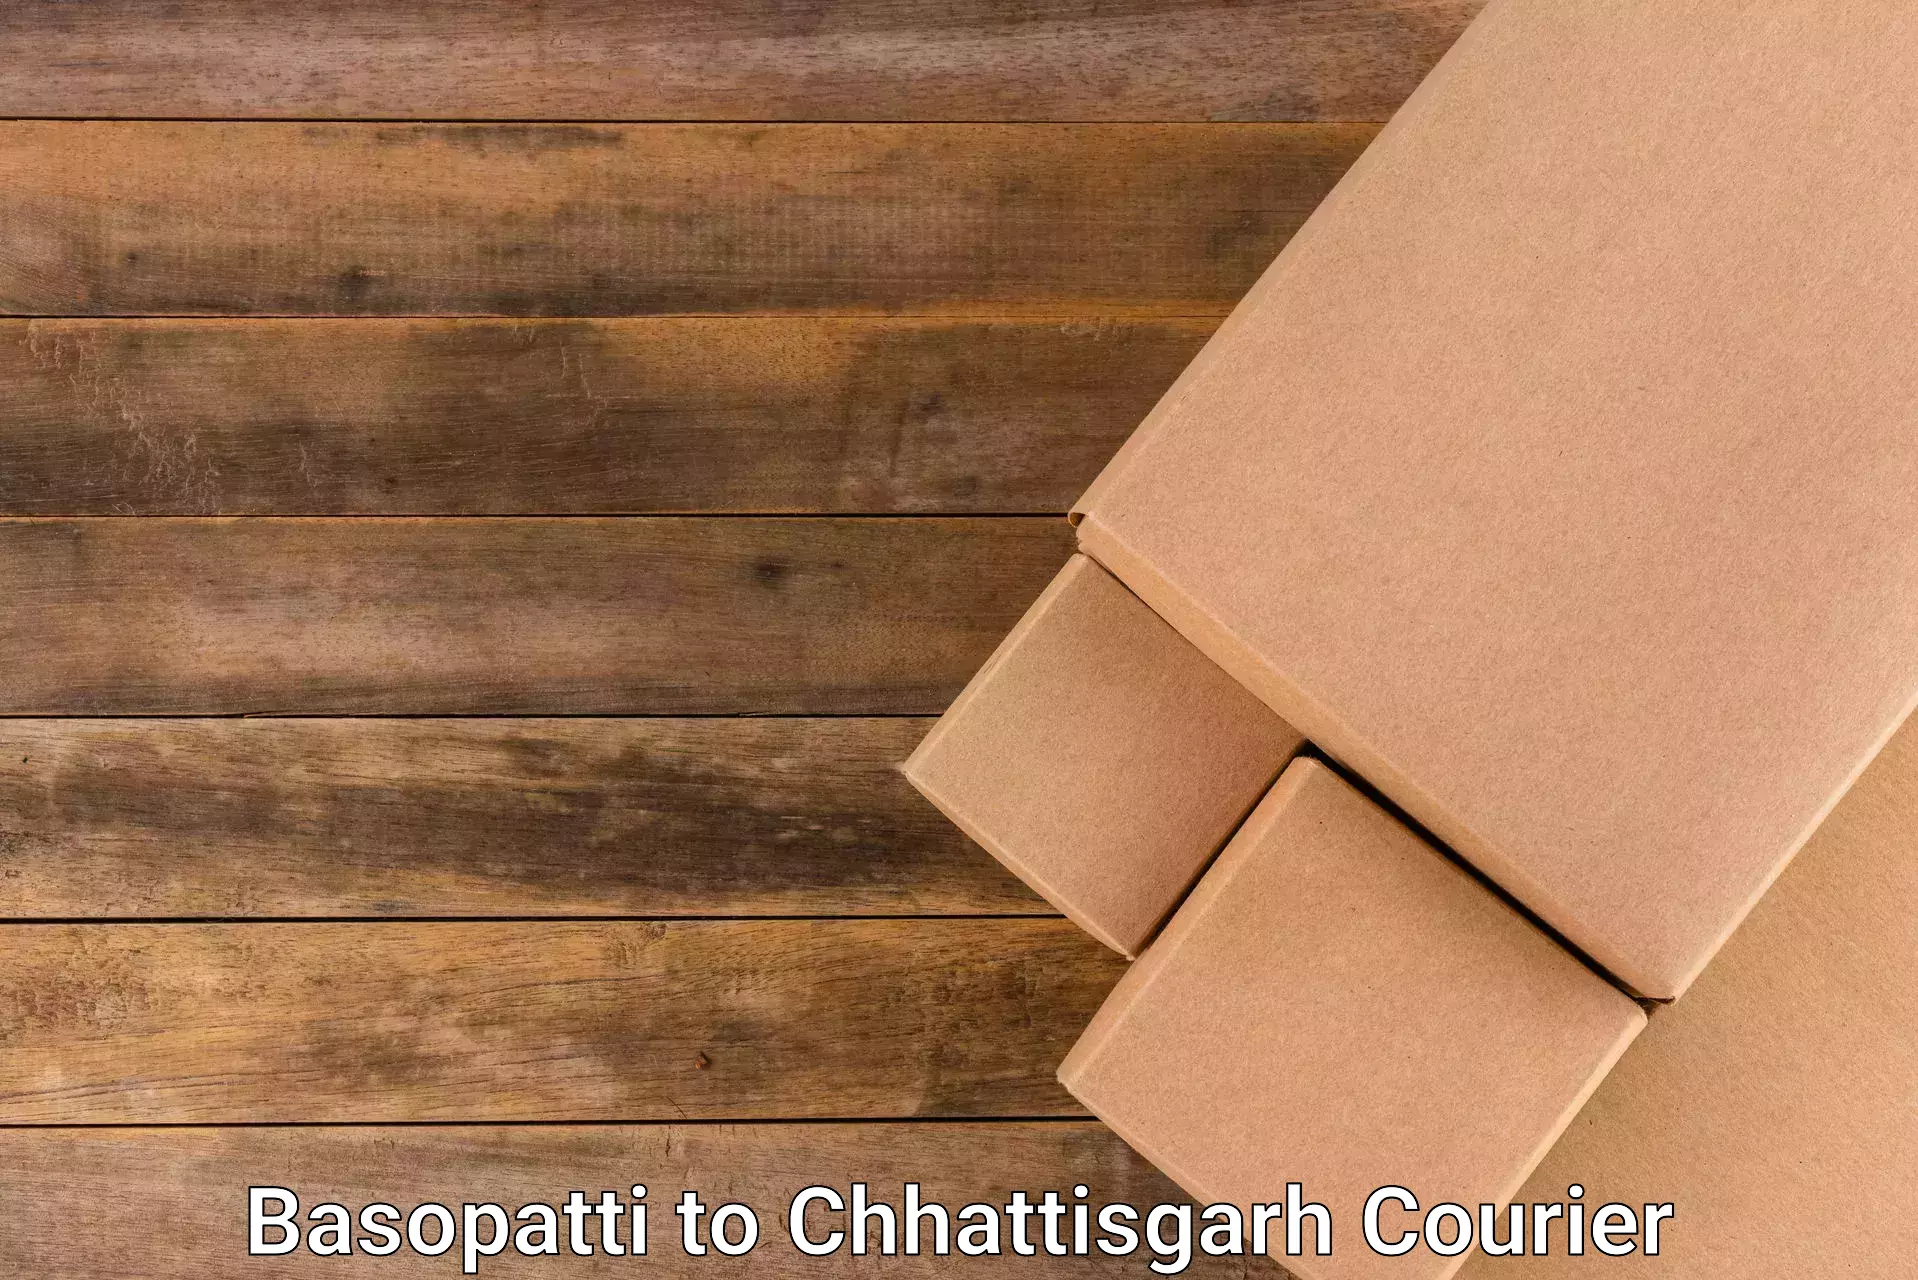 24-hour courier service Basopatti to Chhattisgarh